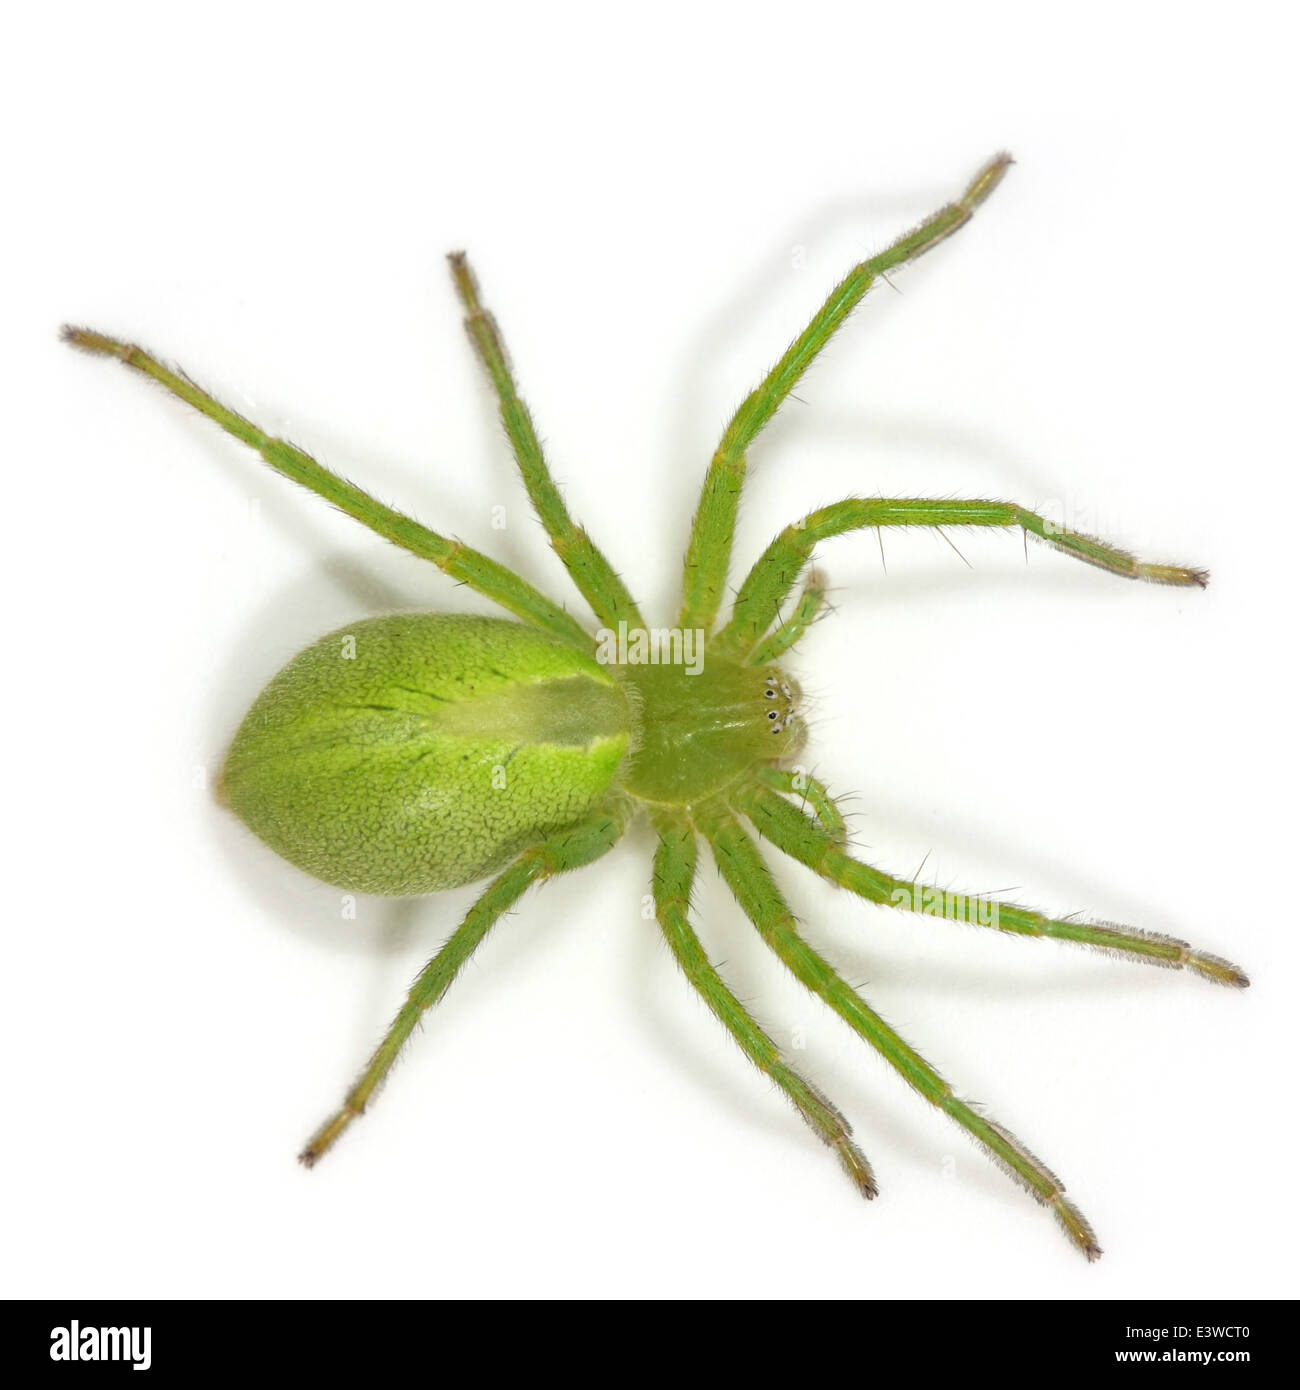 Weibliche grün Huntsman Spider (Micrommata Virescens), Teil der Familie Sparassidae - Riesen Krabben Spinnen. Stockfoto